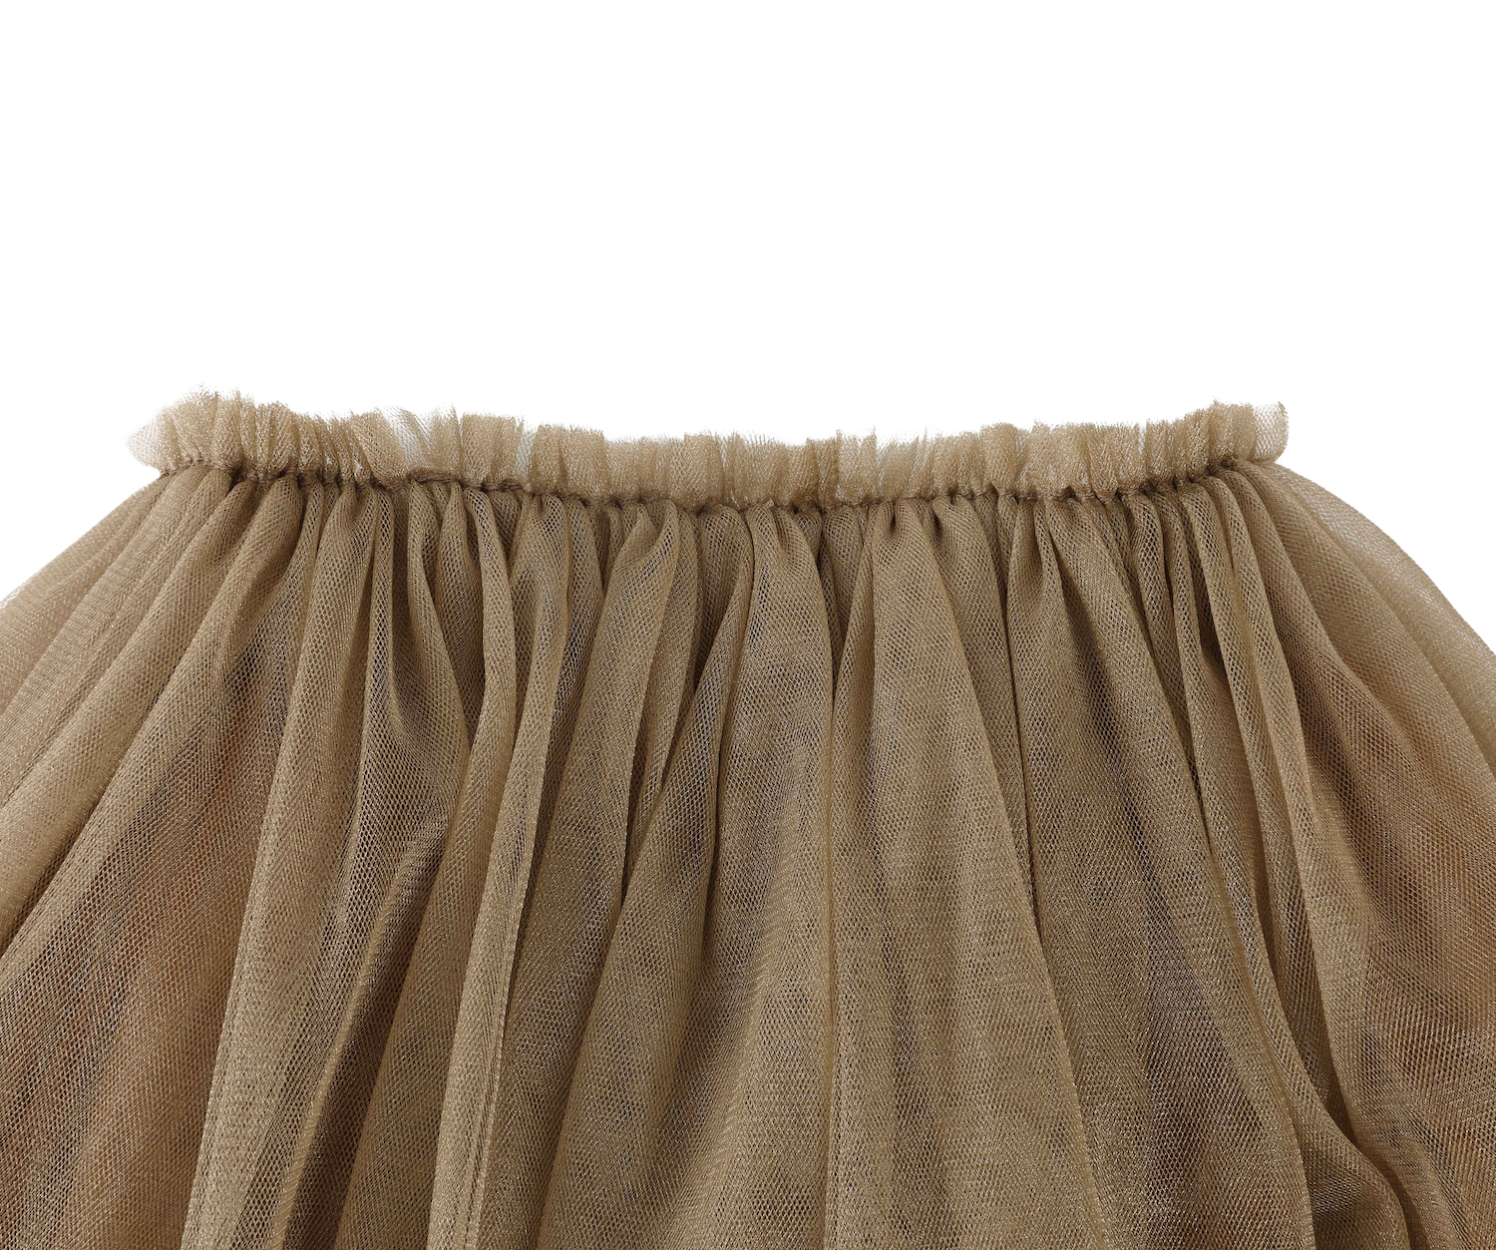 Pien Skirt | Bronze Metallic